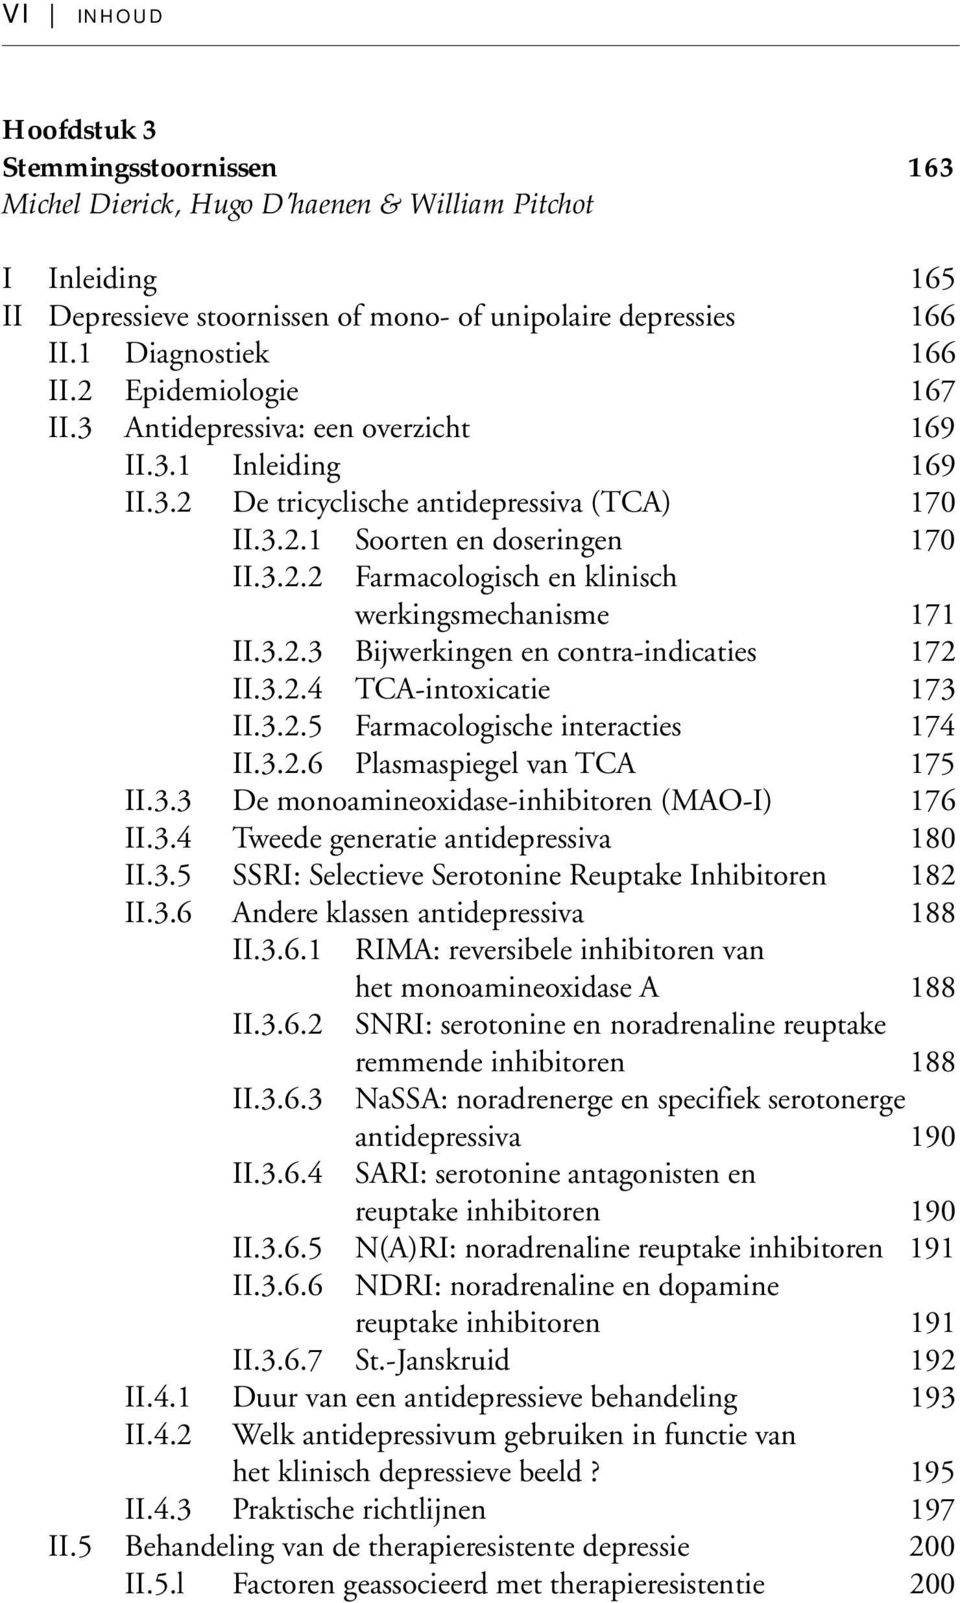 3.2.3 Bijwerkingen en contra-indicaties 172 II.3.2.4 TCA-intoxicatie 173 II.3.2.5 Farmacologische interacties 174 II.3.2.6 Plasmaspiegel van TCA 175 II.3.3 De monoamineoxidase-inhibitoren (MAO-I) 176 II.